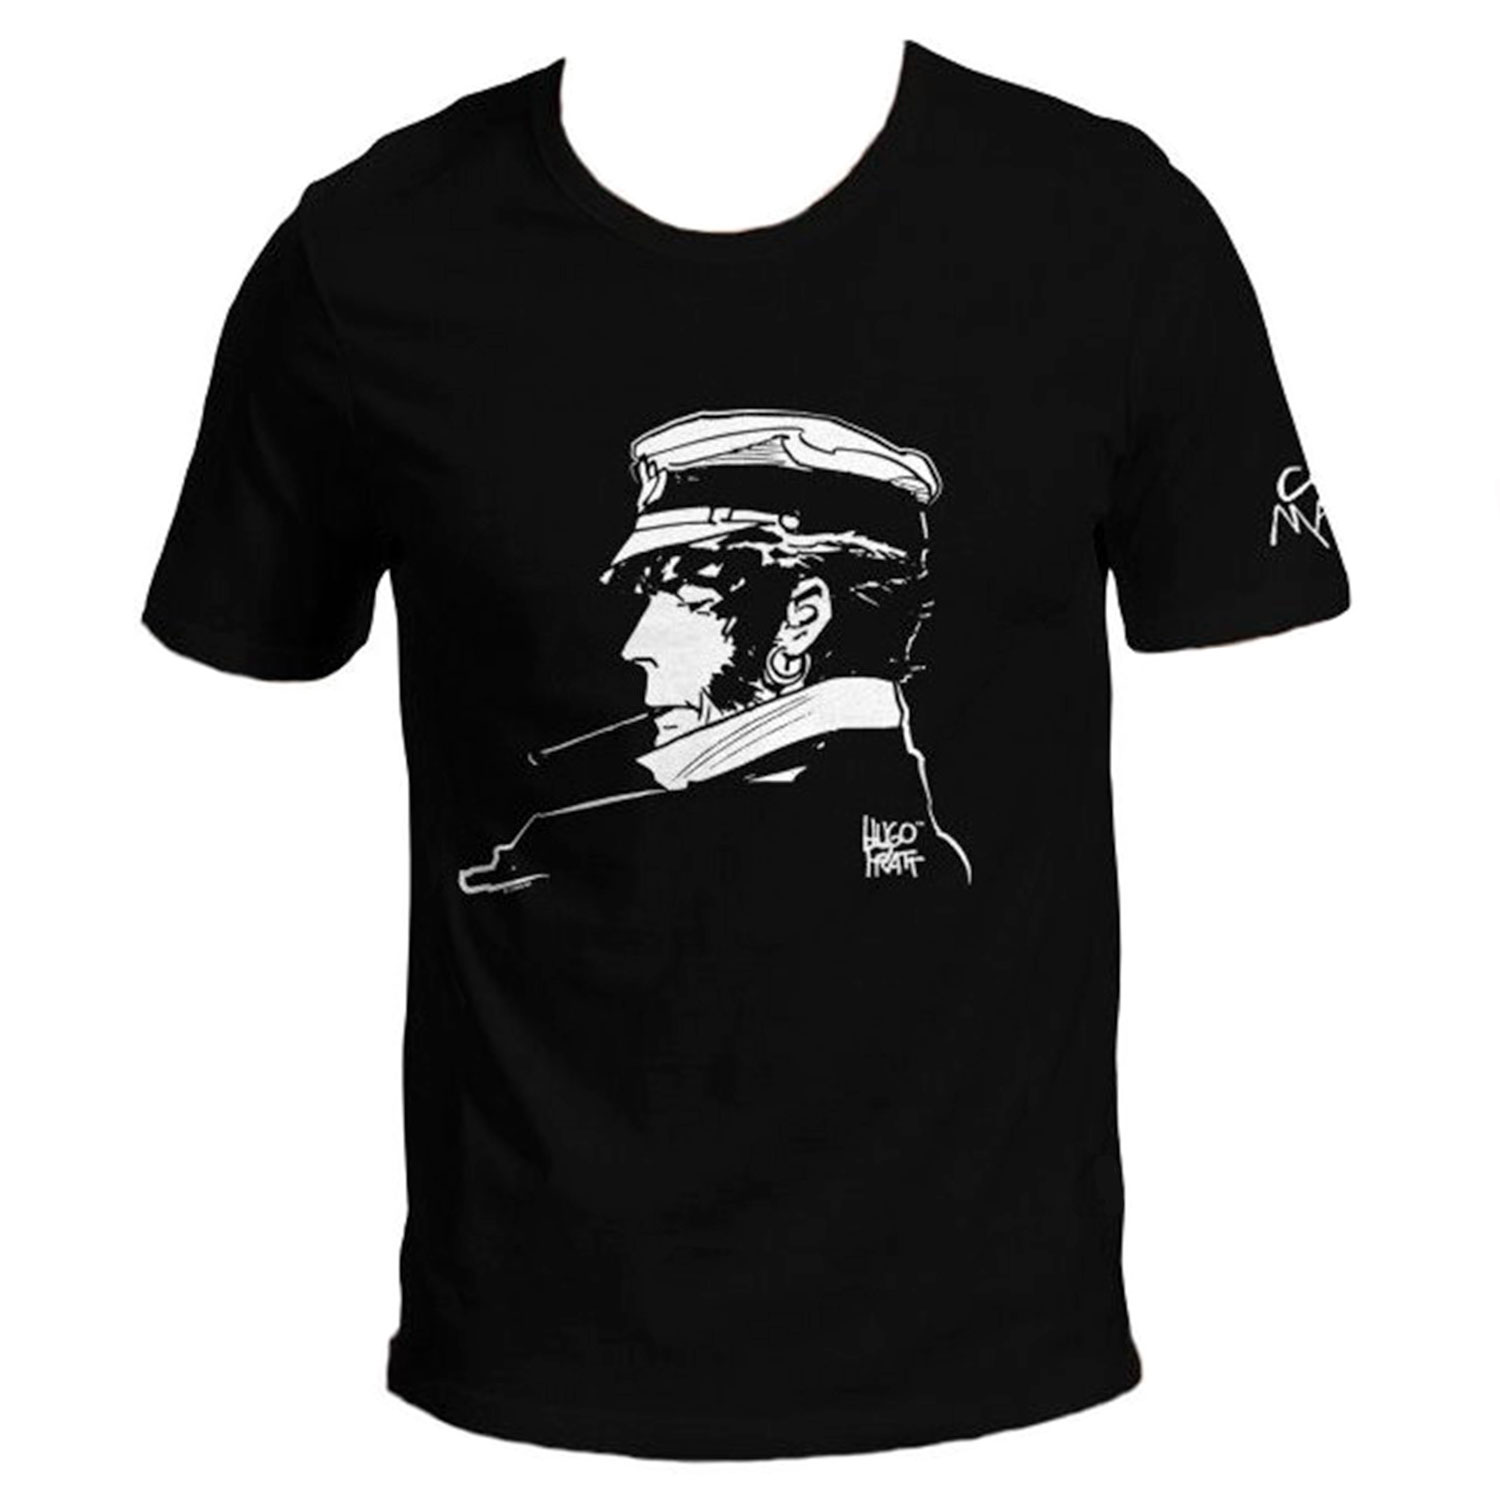 T-shirt Hugo Pratt : Corto Maltés, Cigarrillo - Negro - Tamaño M